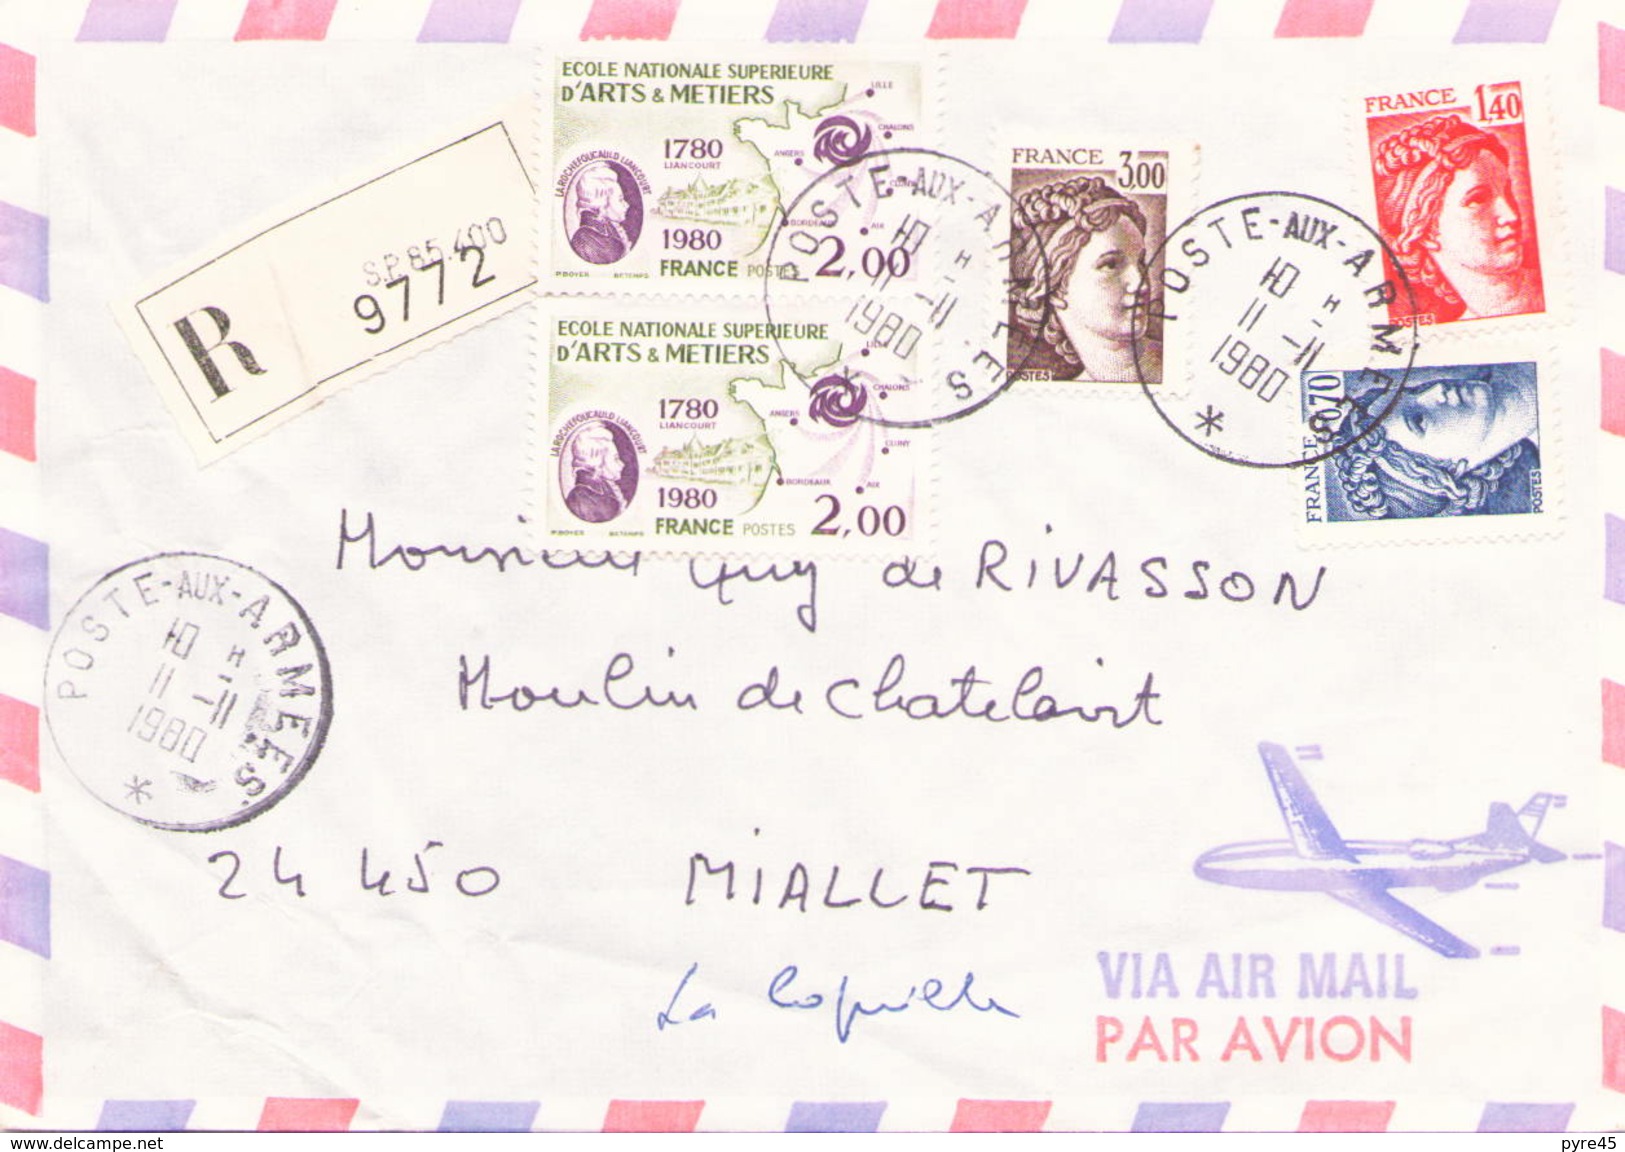 FRANCE ENVELOPPE RECOMMANDEE DU 11 NOVEMBRE 1980 DE SP 85400 POUR MIALLET - Covers & Documents